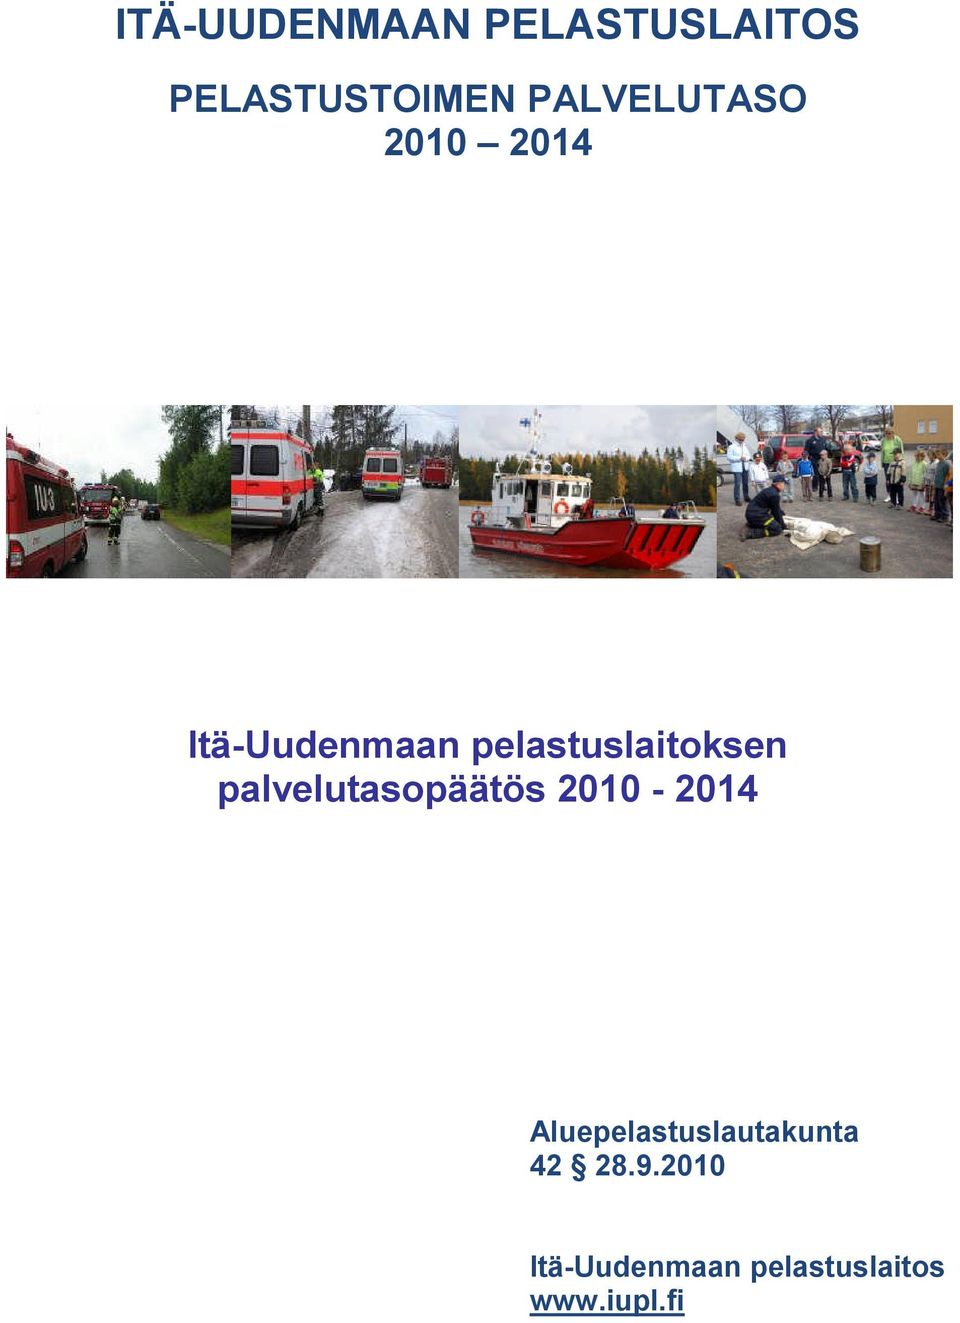 pelastuslaitoksen palvelutasopäätös 2010-2014